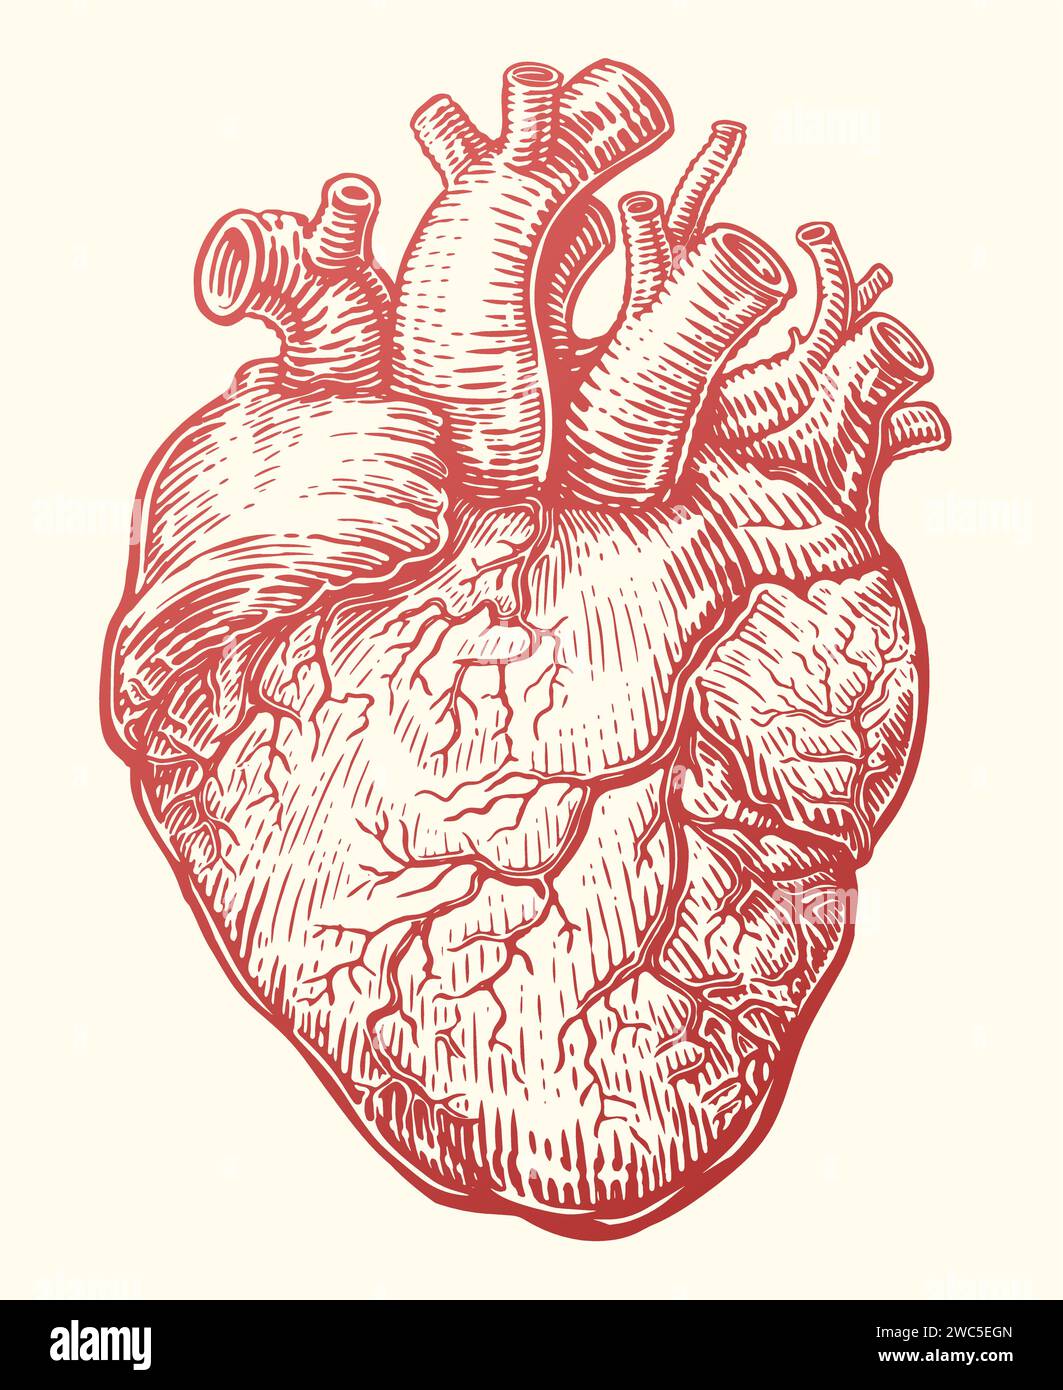 Esquisse de coeur. Organe humain anatomique avec système veineux, battement cardiaque. Illustration vectorielle dessinée à la main Illustration de Vecteur